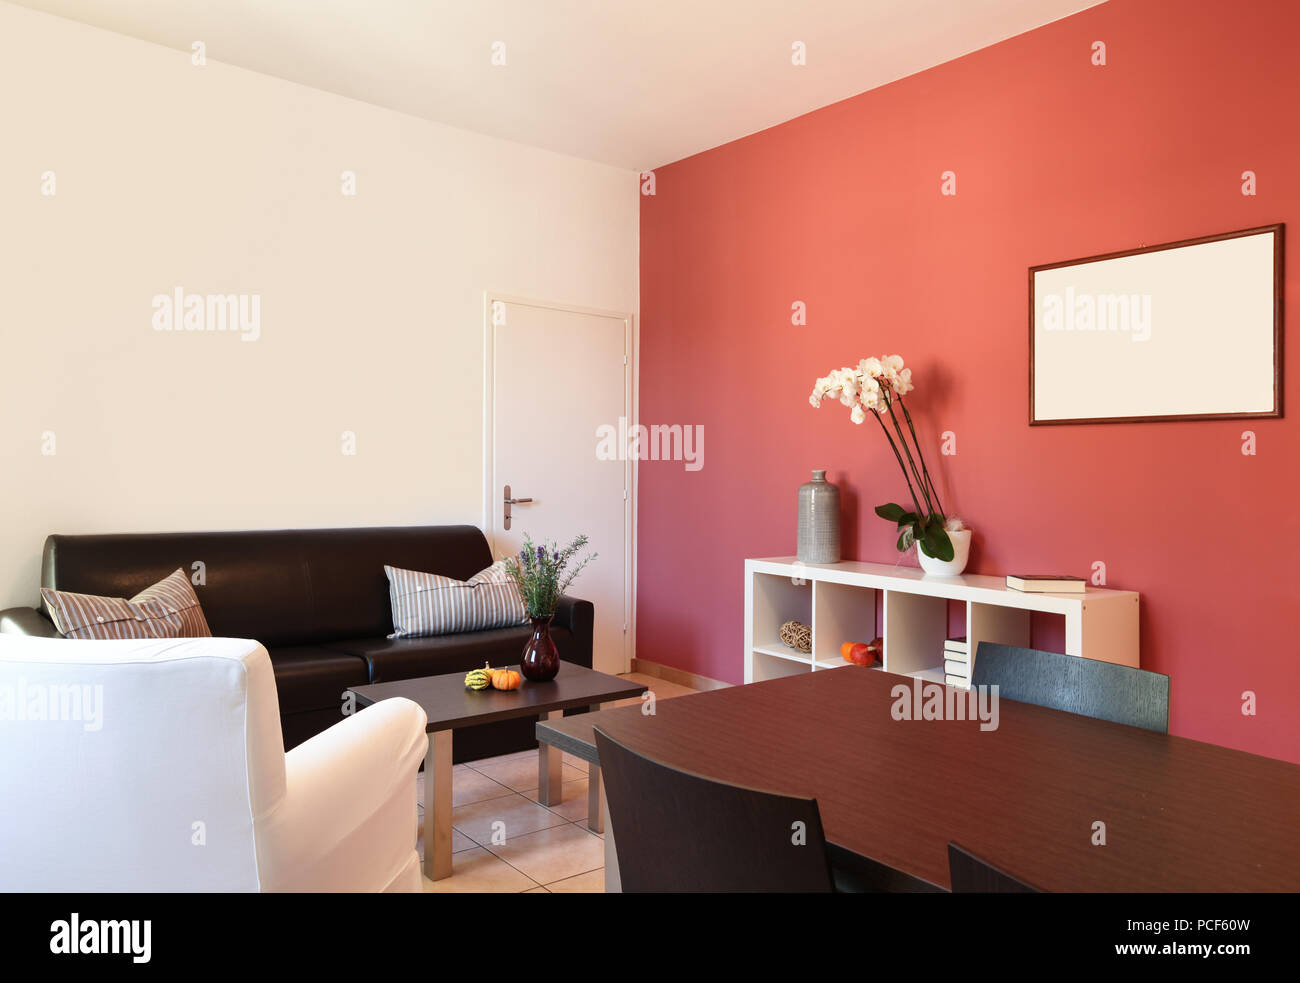 innere der wohnung, wohnzimmer mit rote wand stockfotografie - alamy